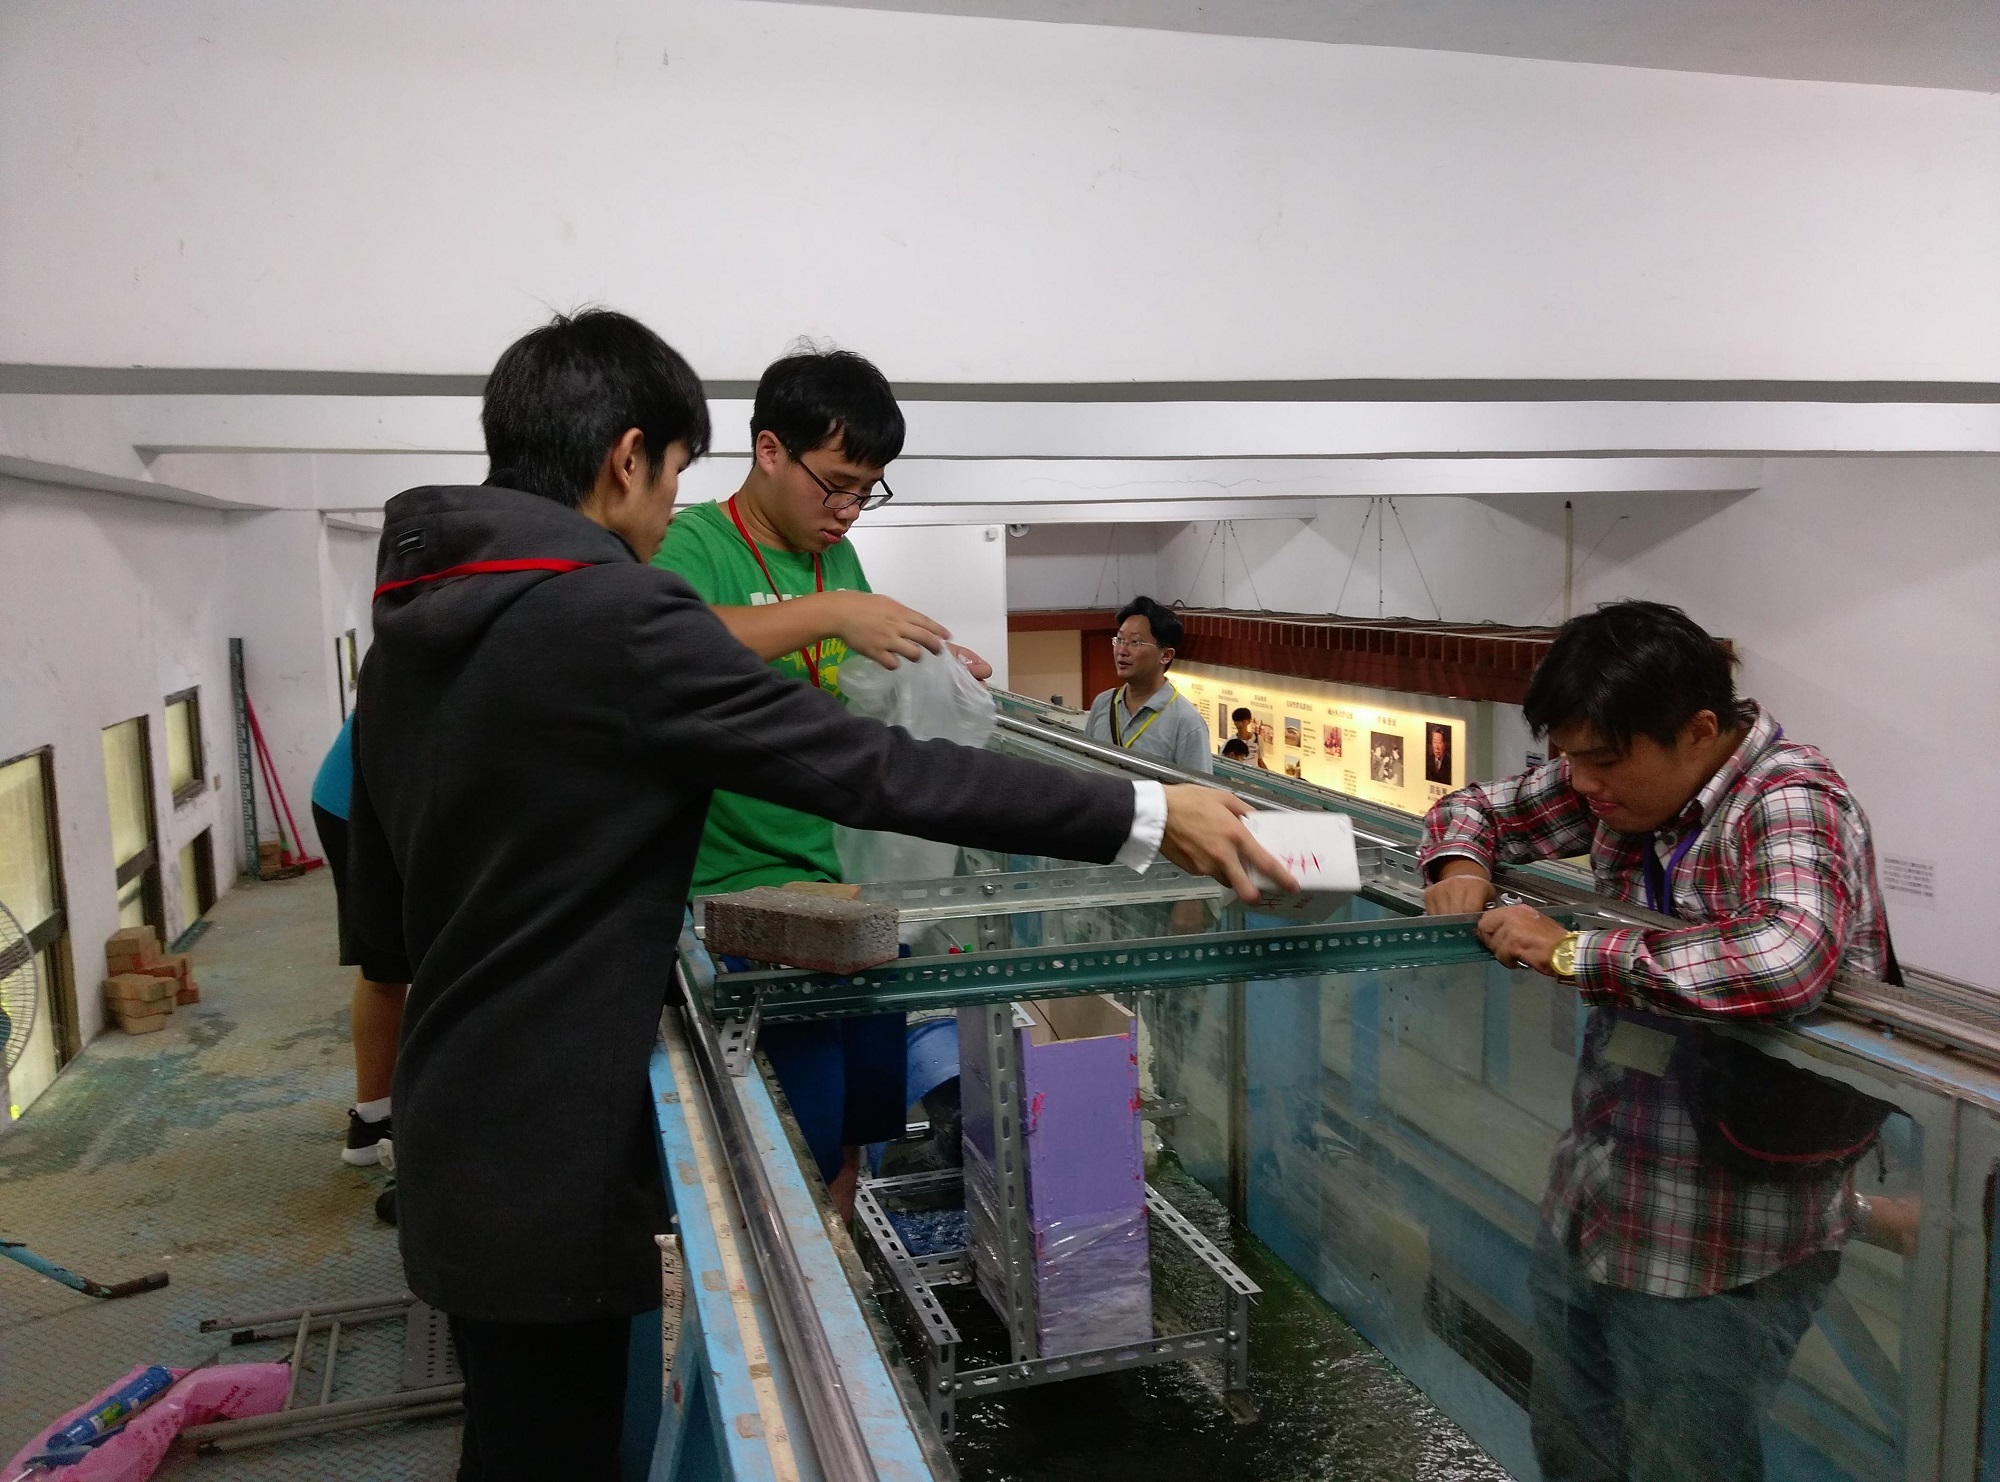 機械系同學所研發的微型水力發電機，屬於螺旋槳型水輪發電機，學生正在水工實驗所組裝及測試機組效率